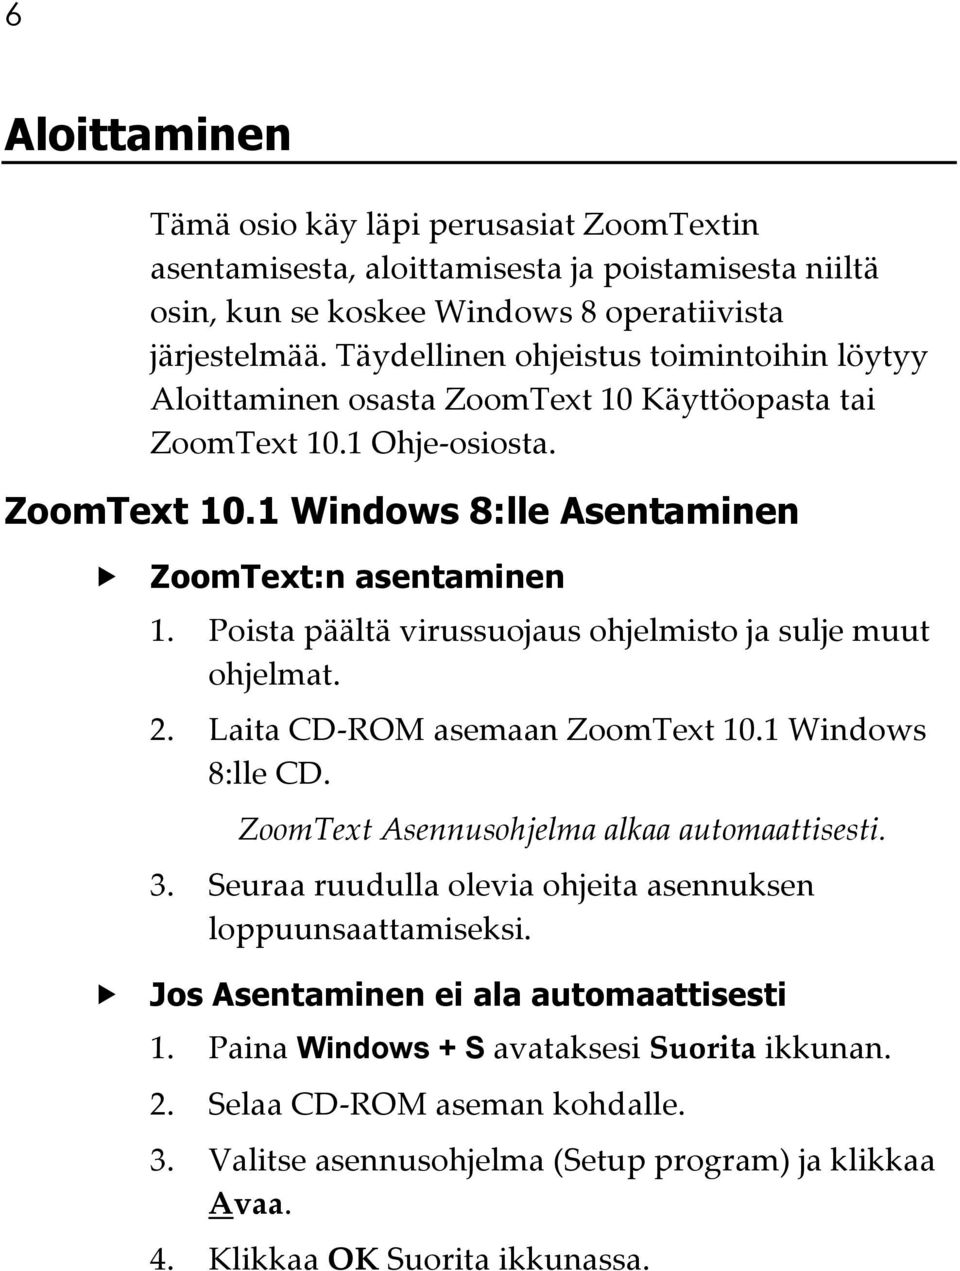 Poista päältä virussuojaus ohjelmisto ja sulje muut ohjelmat. 2. Laita CD-ROM asemaan ZoomText 10.1 Windows 8:lle CD. ZoomText Asennusohjelma alkaa automaattisesti. 3.